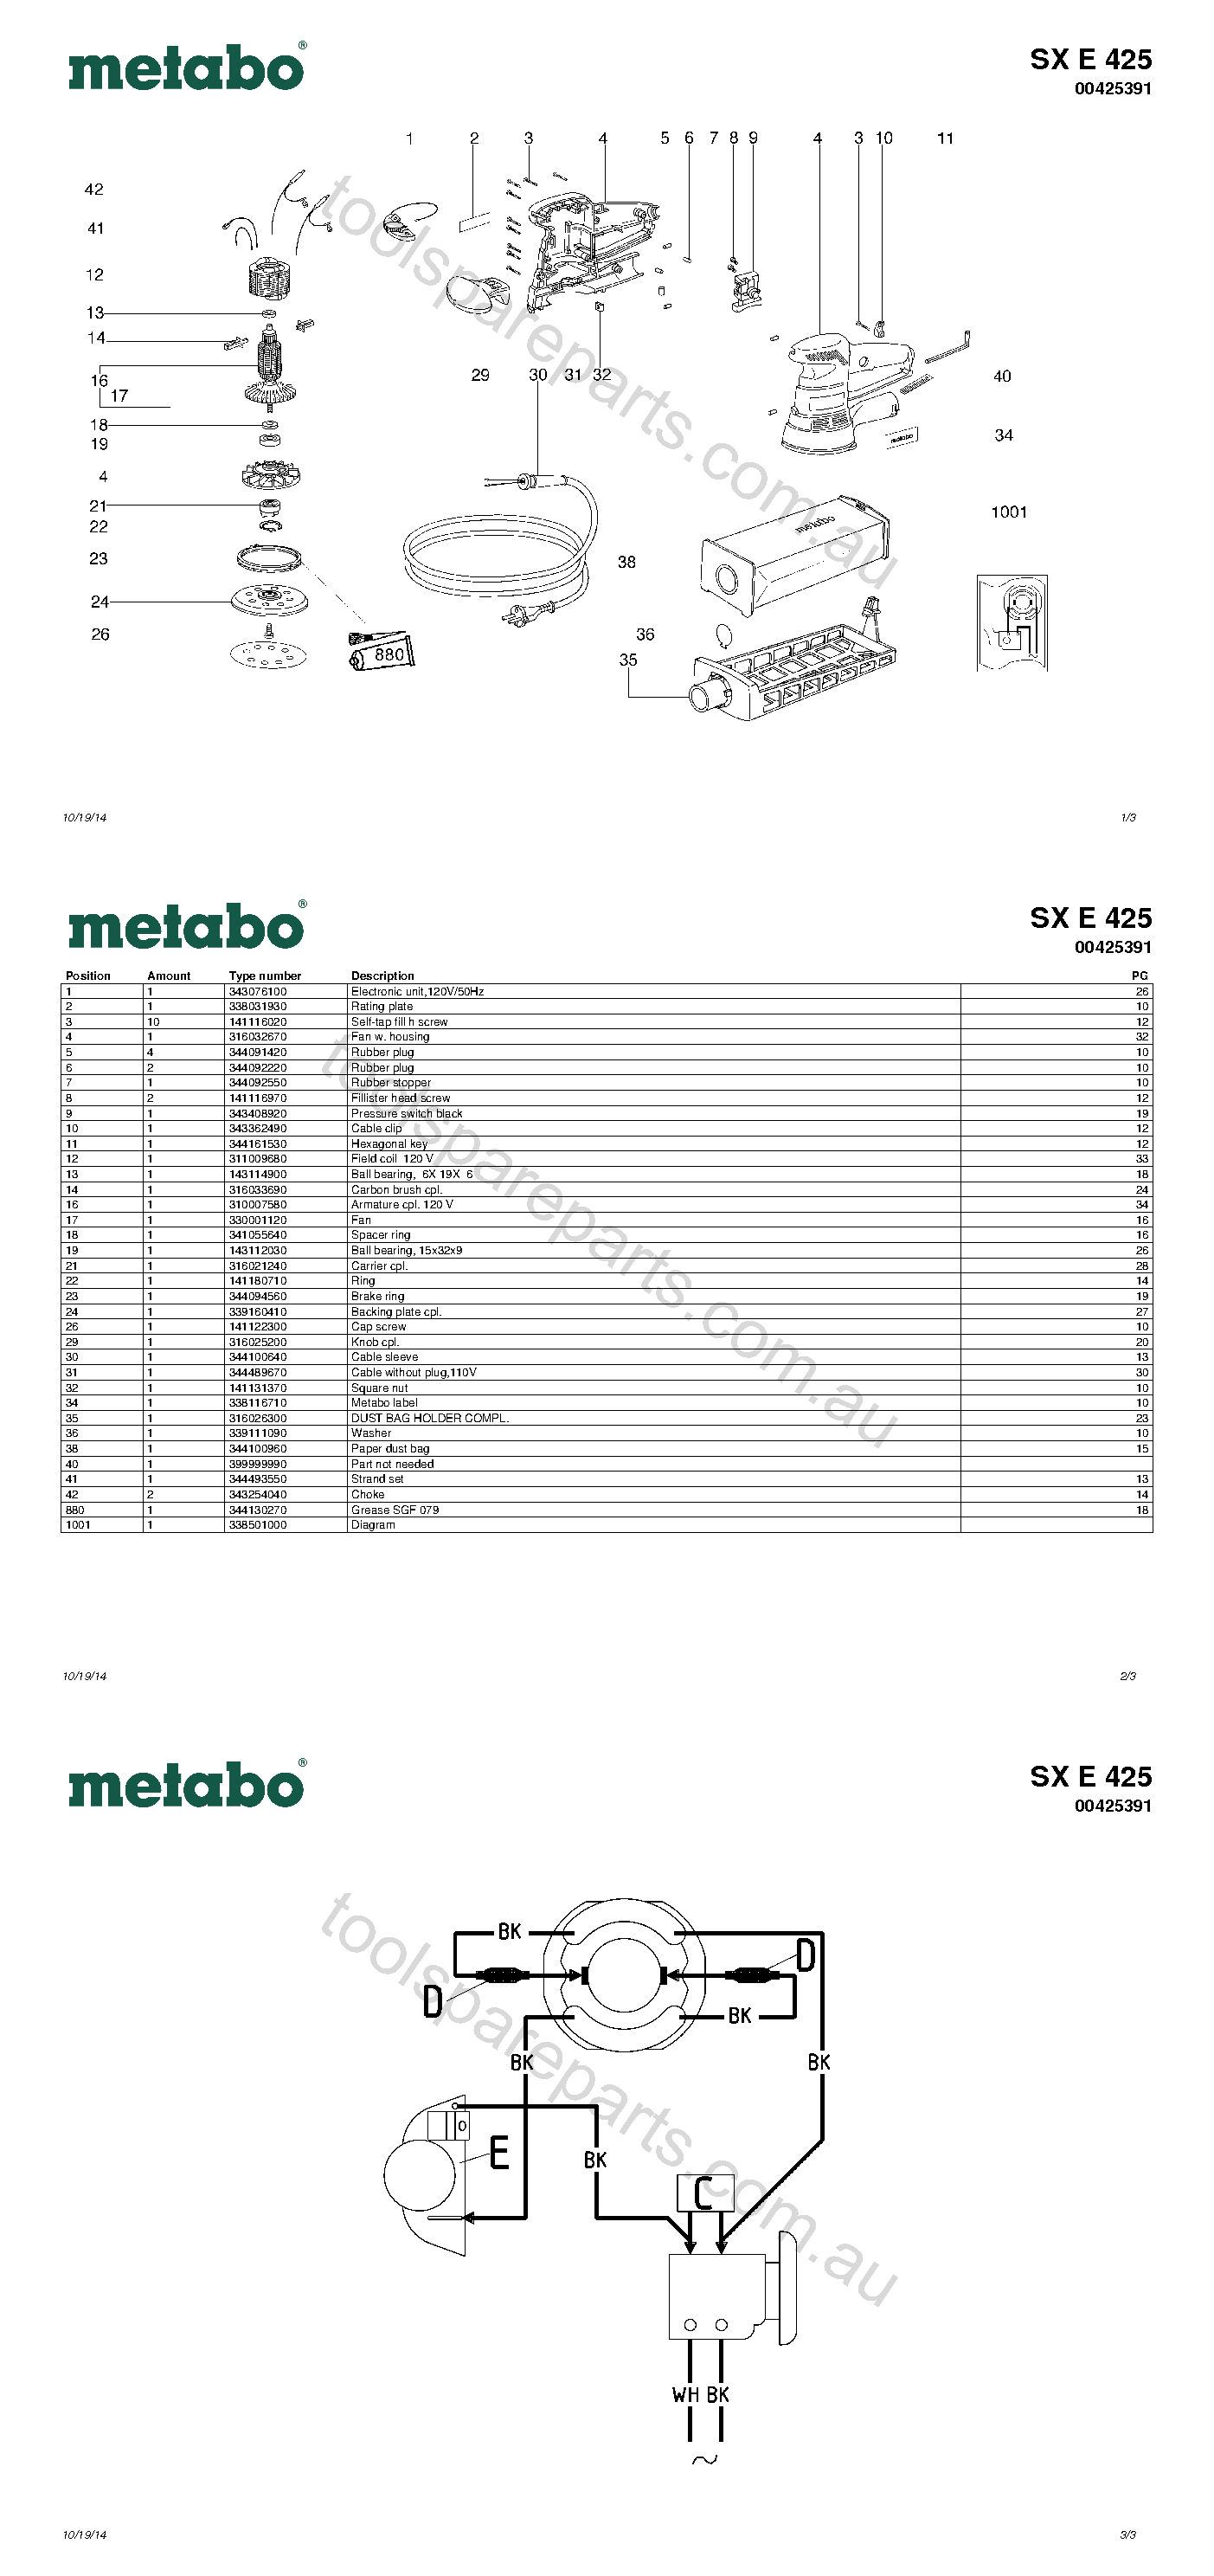 Metabo SX E 425 00425391  Diagram 1